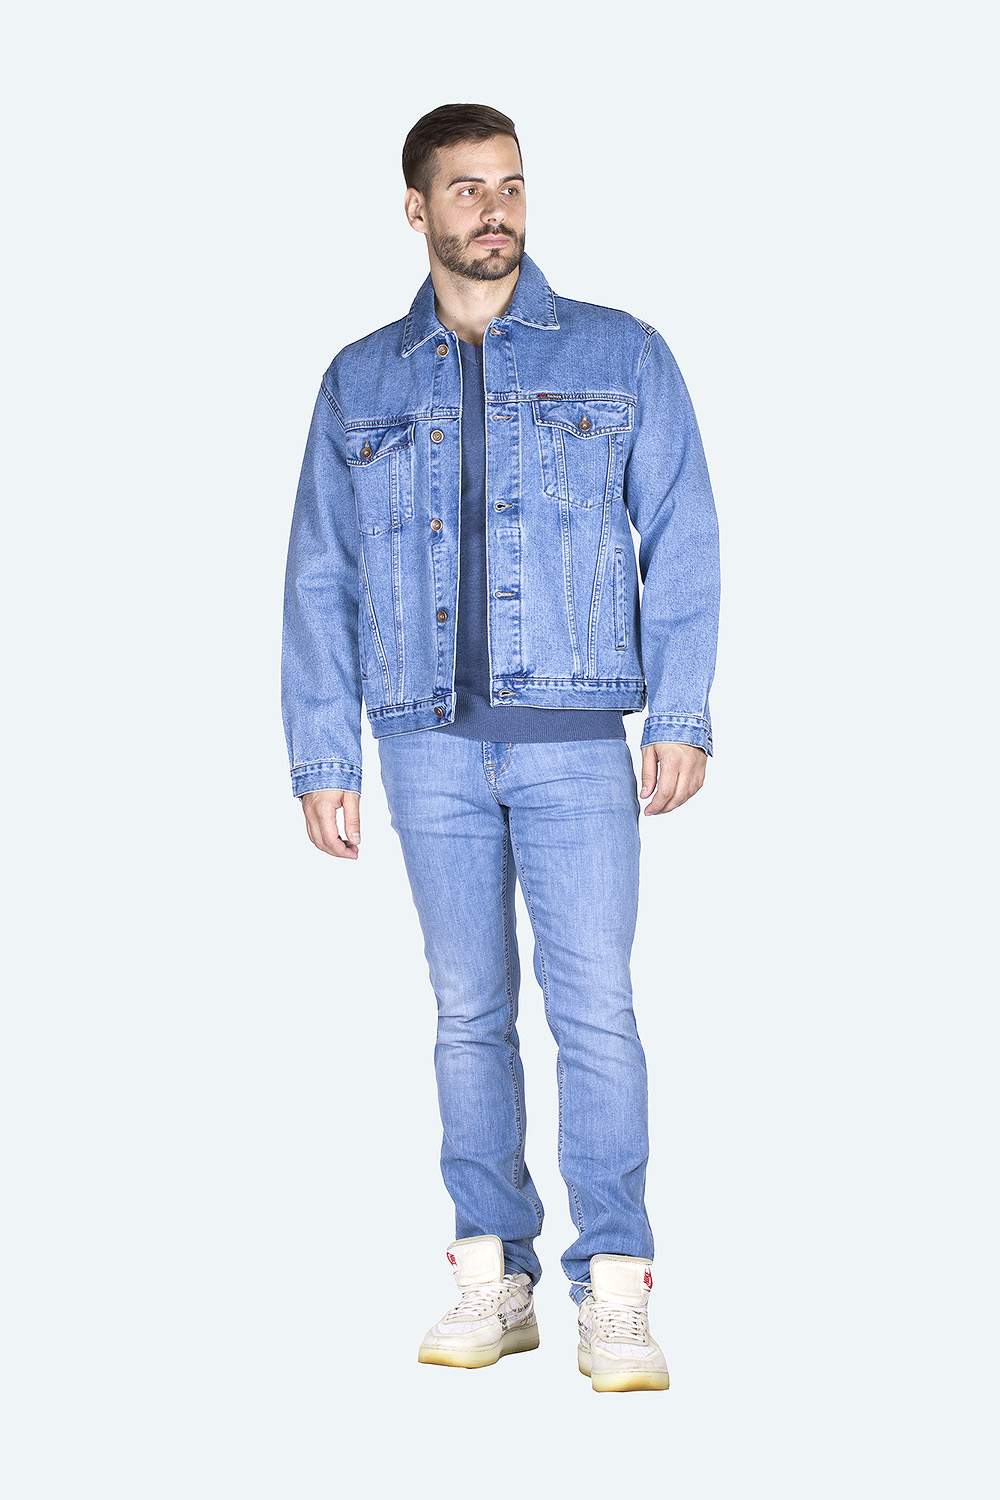 Джинсовая куртка мужская Dairos GD5060110 голубая L